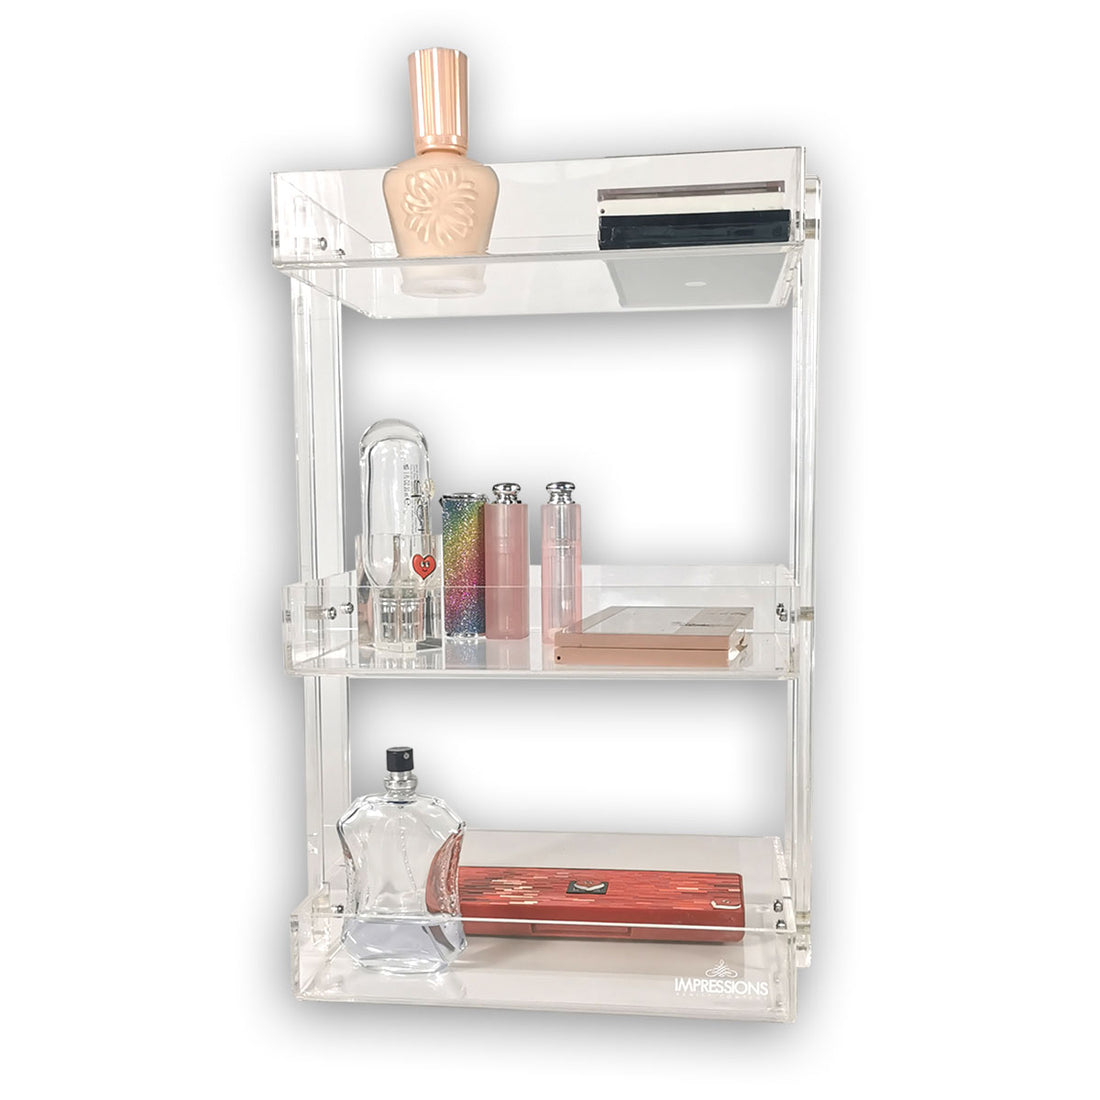 3-Tier Acrylic Shelf Organizer • Impressions Vanity Co.